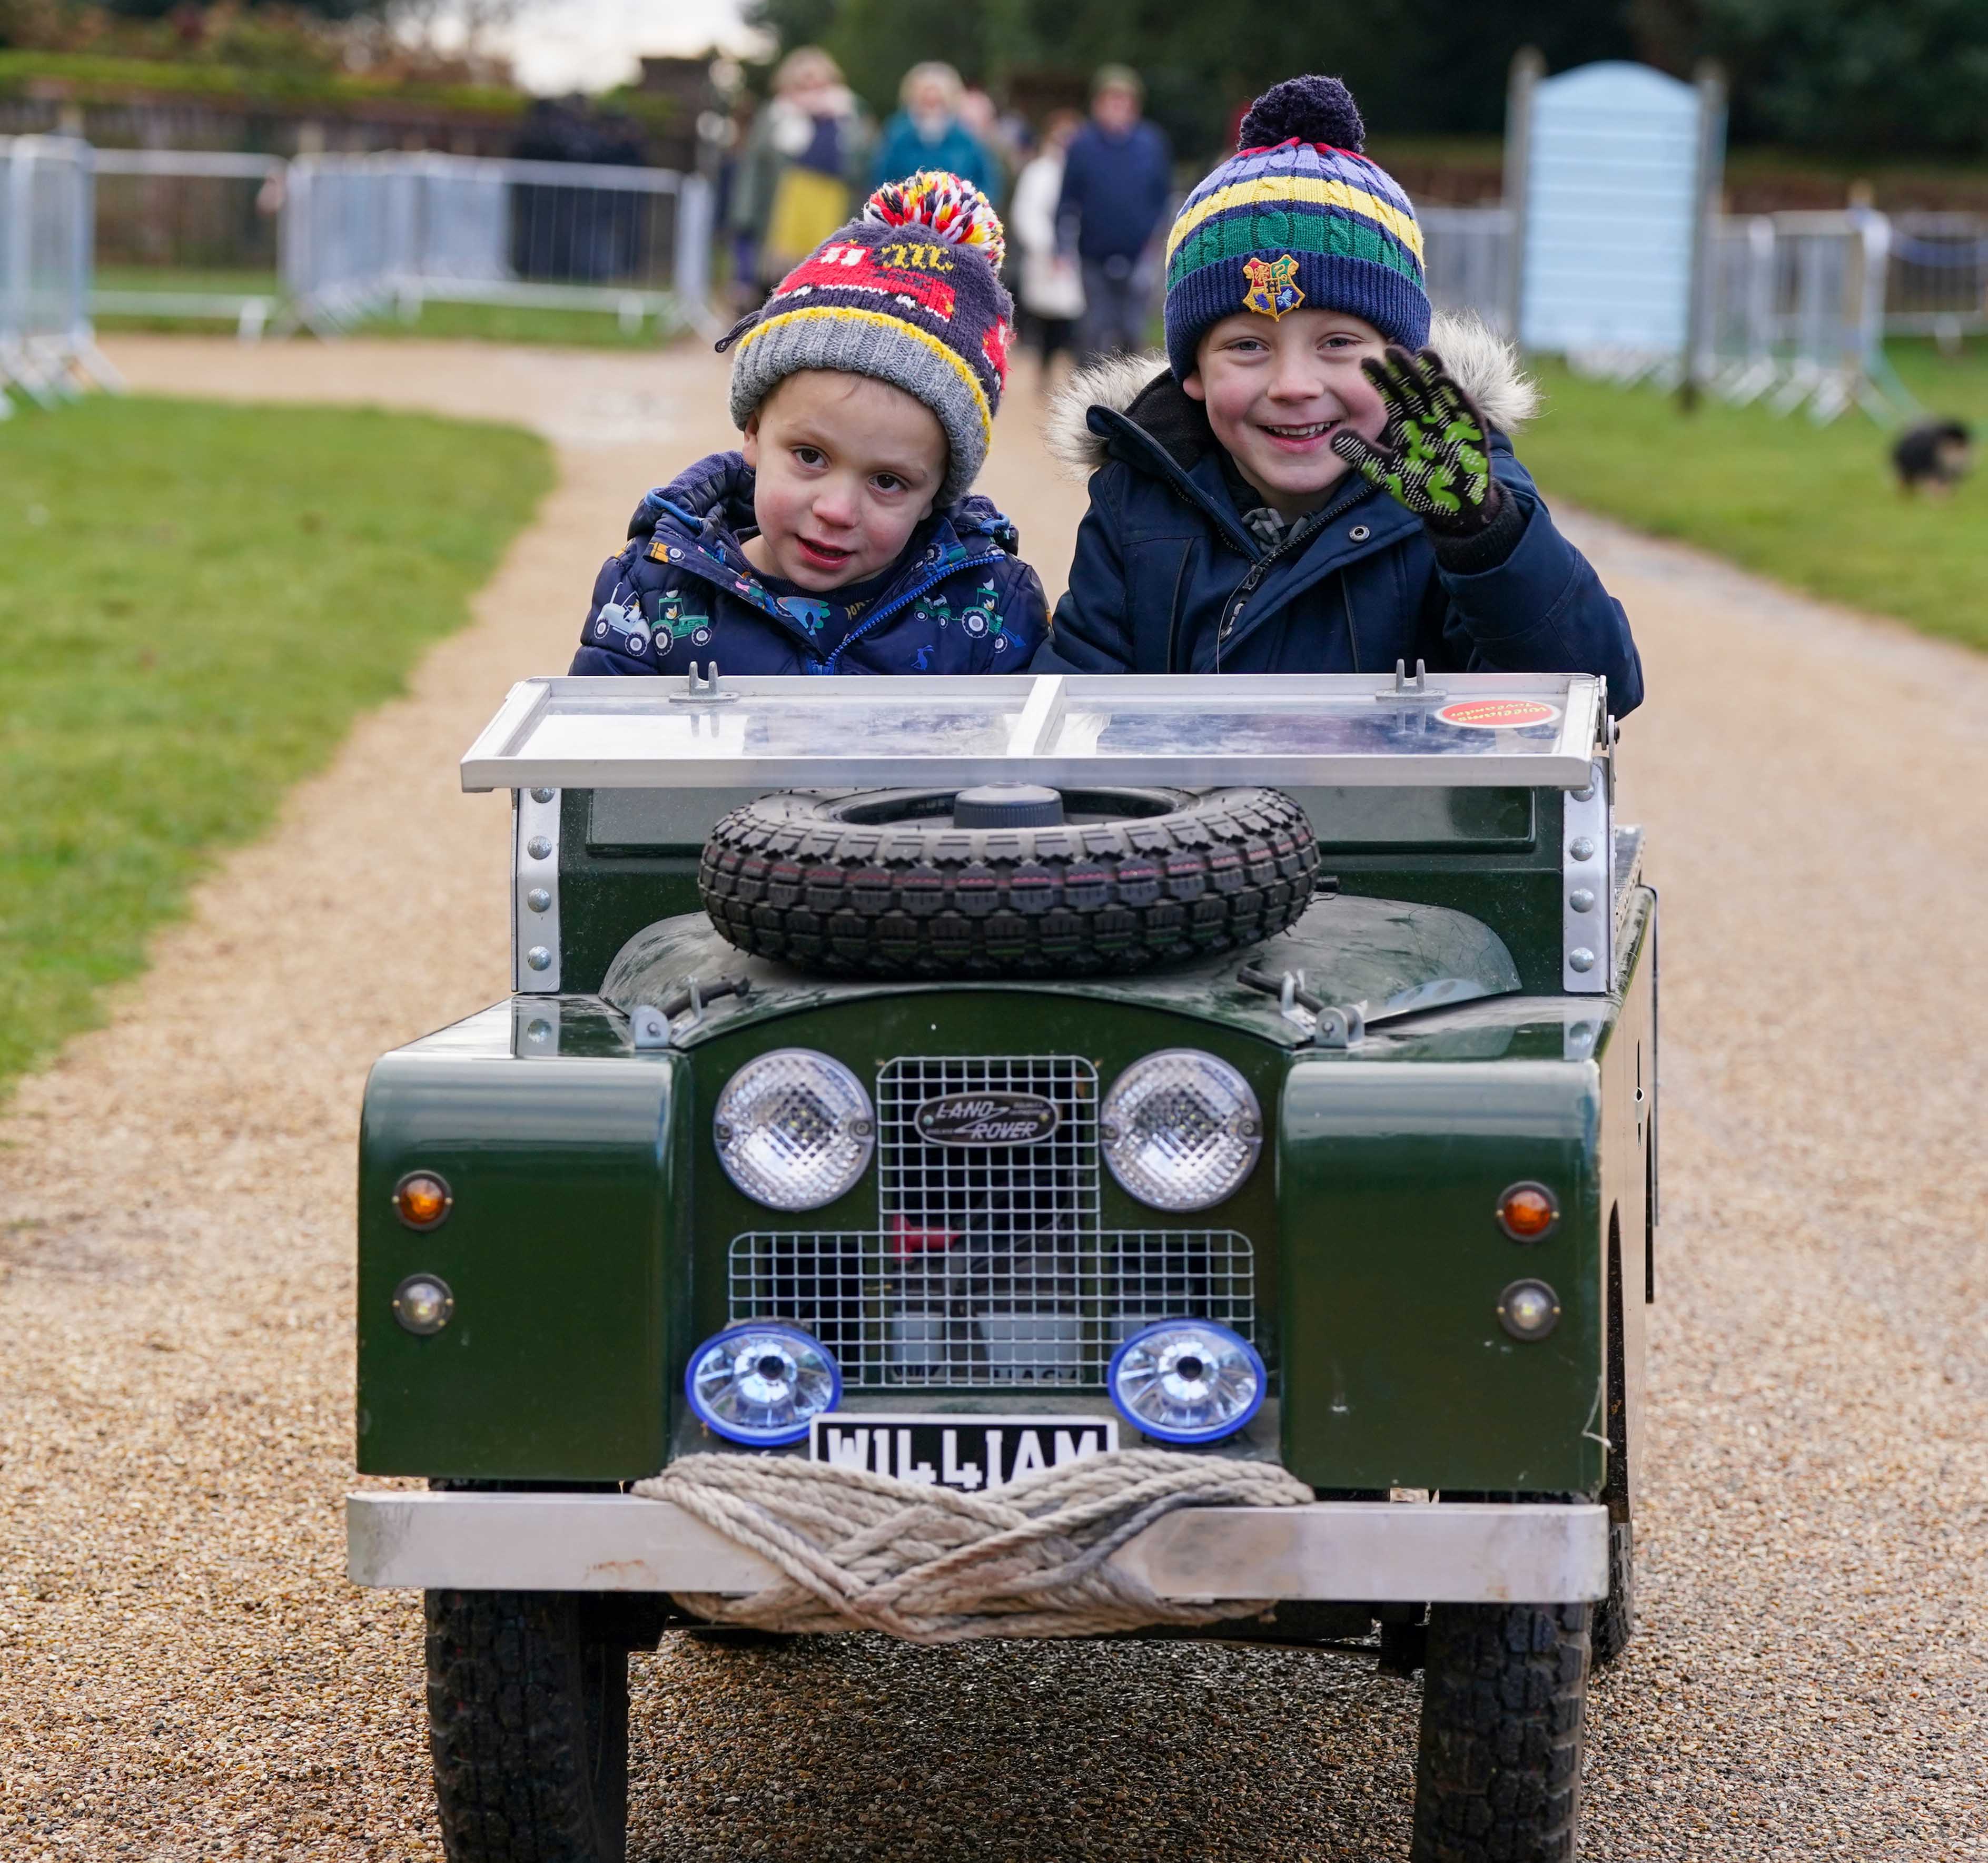 William (à droite), 6 ans, et son frère Oliver (à gauche), 3 ans, sont assis dans leur Land Rover fait maison